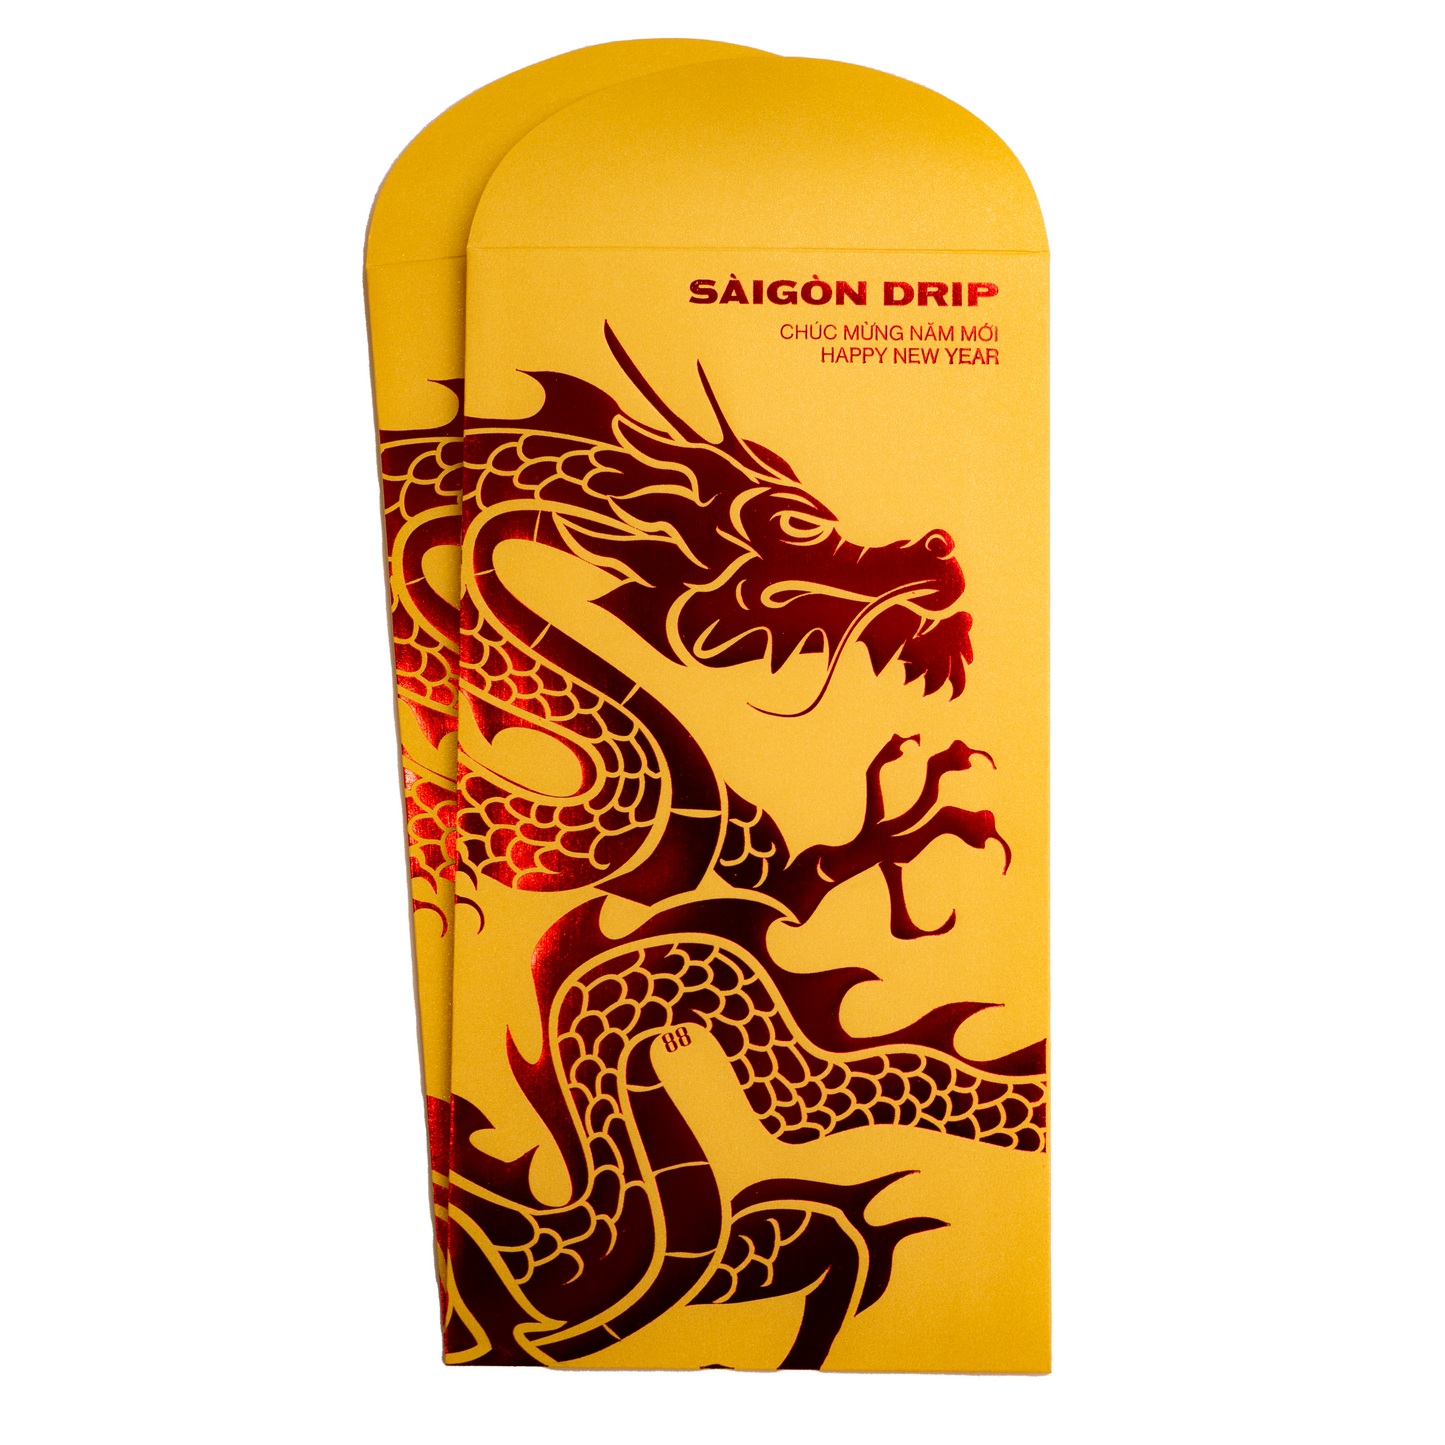 Li Xi Year of the Dragon